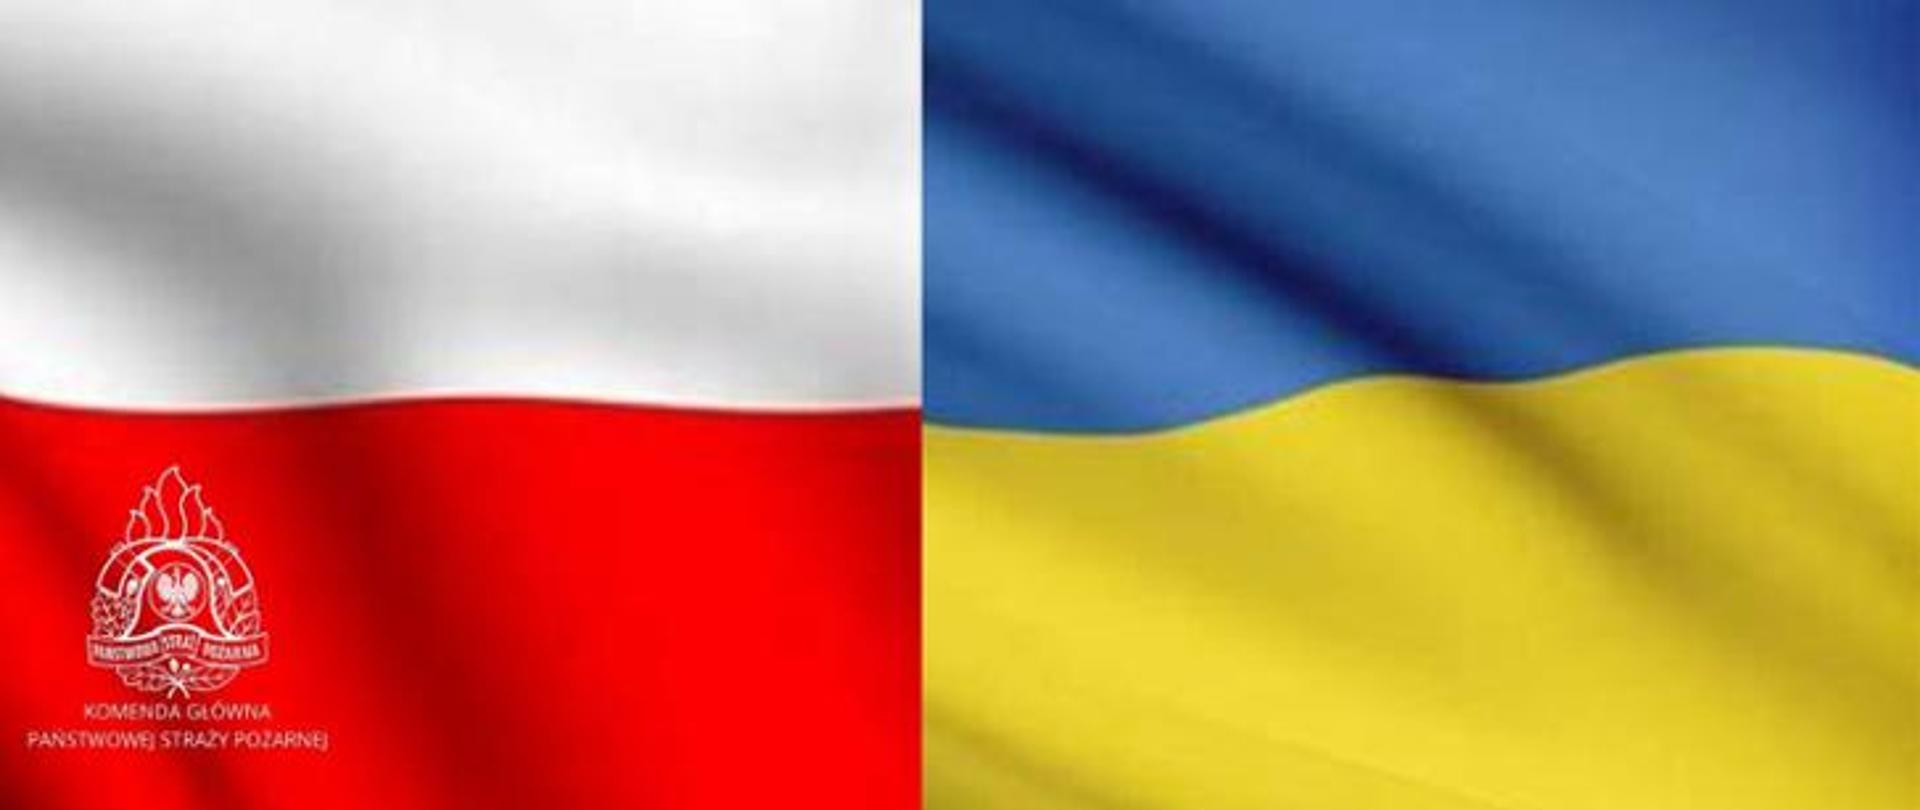 Połączone dwie flagi. Flagę Polski i Ukrainy. Na fladze polski znajduje się logo PSP. 